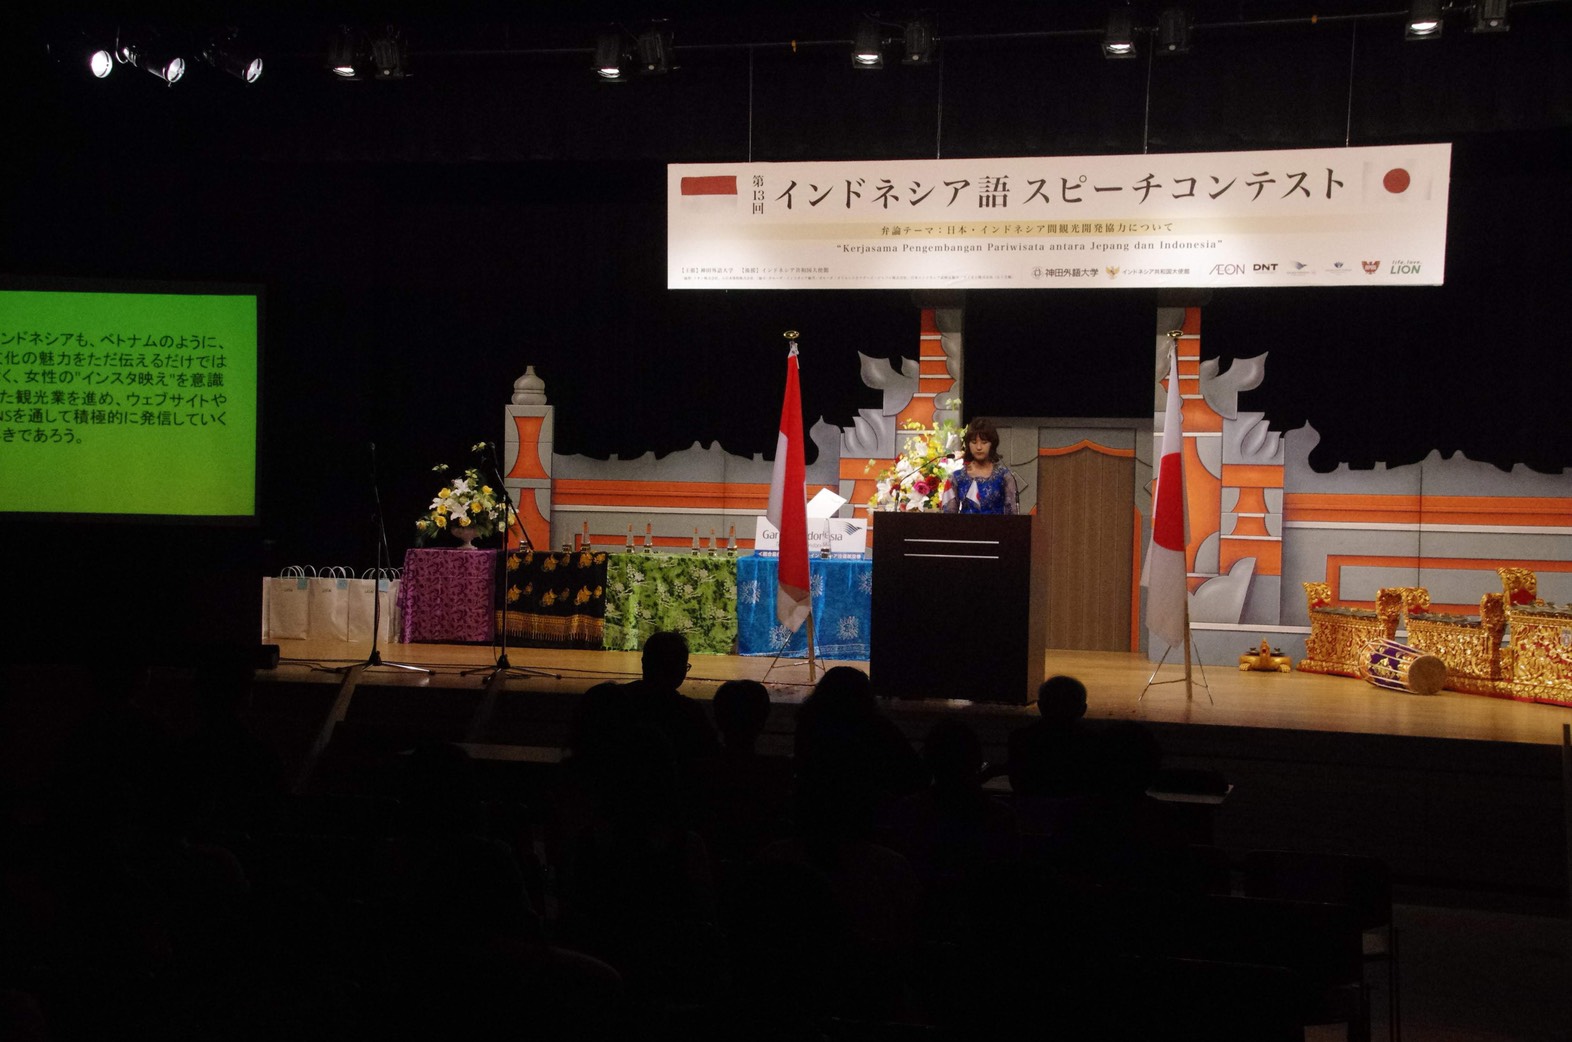 阪大生が「第13回インドネシア語スピーチコンテスト」で最優秀賞を受賞